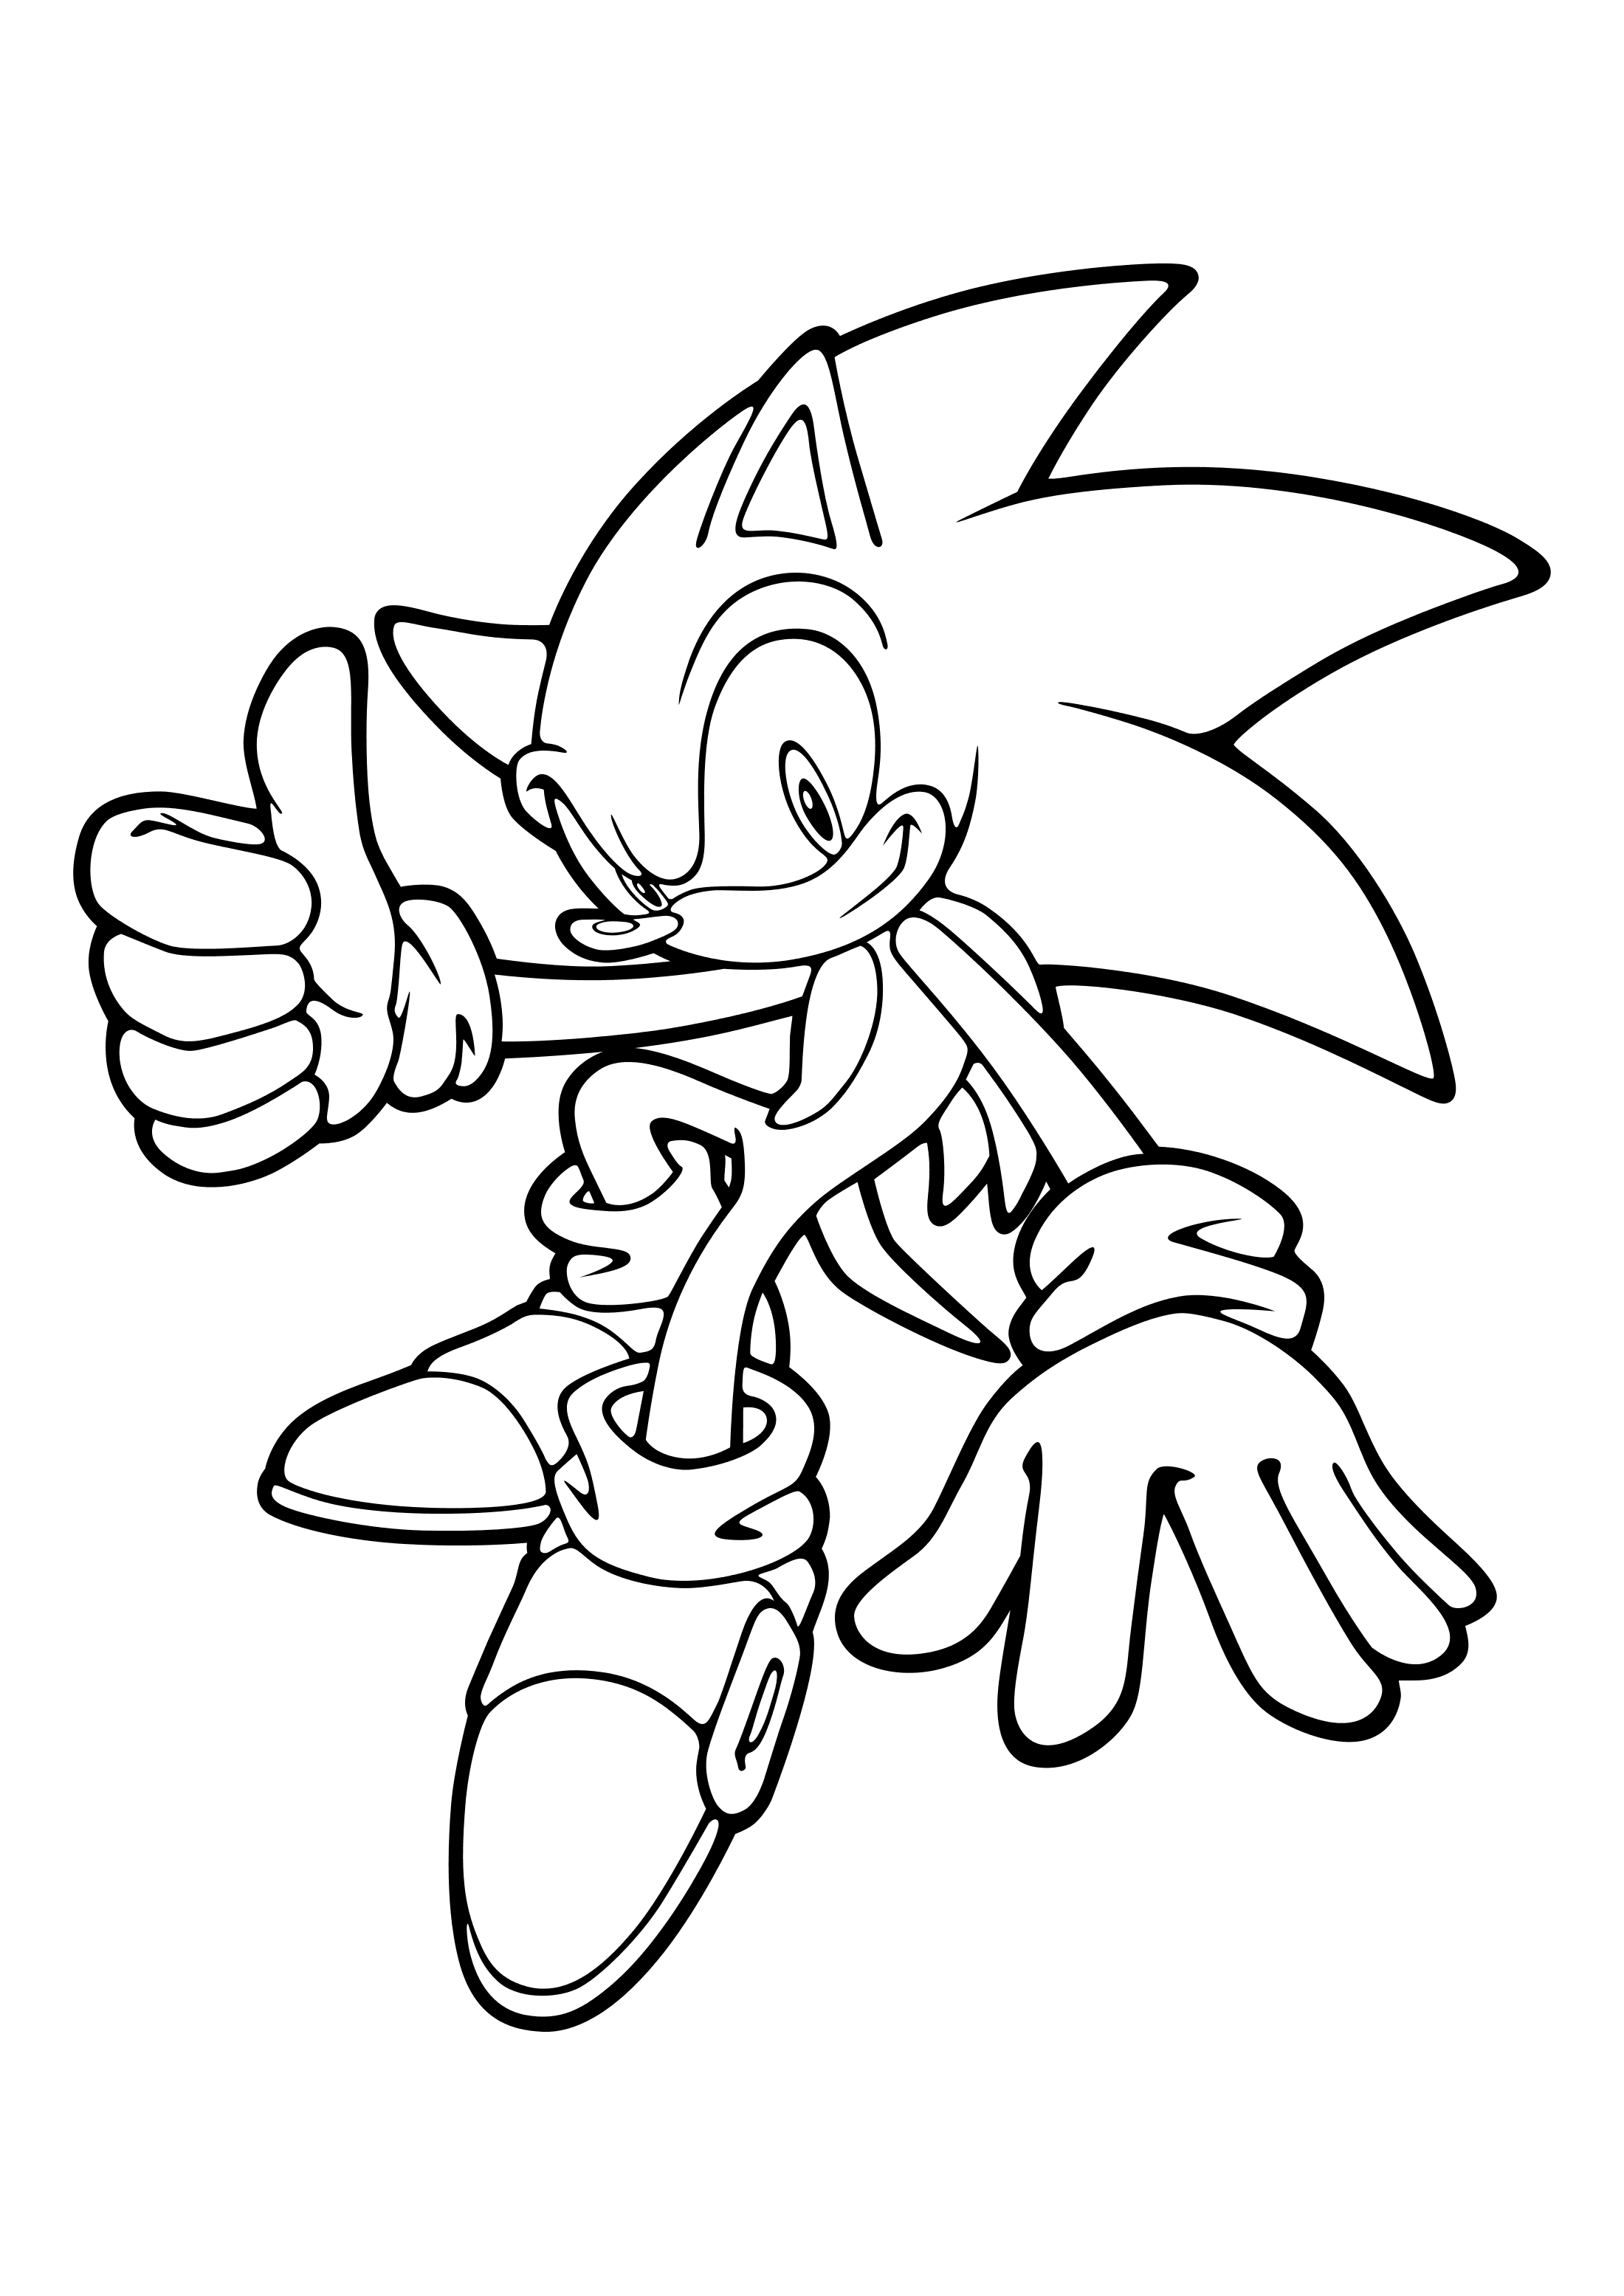 Para Colorear Sonic Muestra que todo está bien Imprimir Gratis